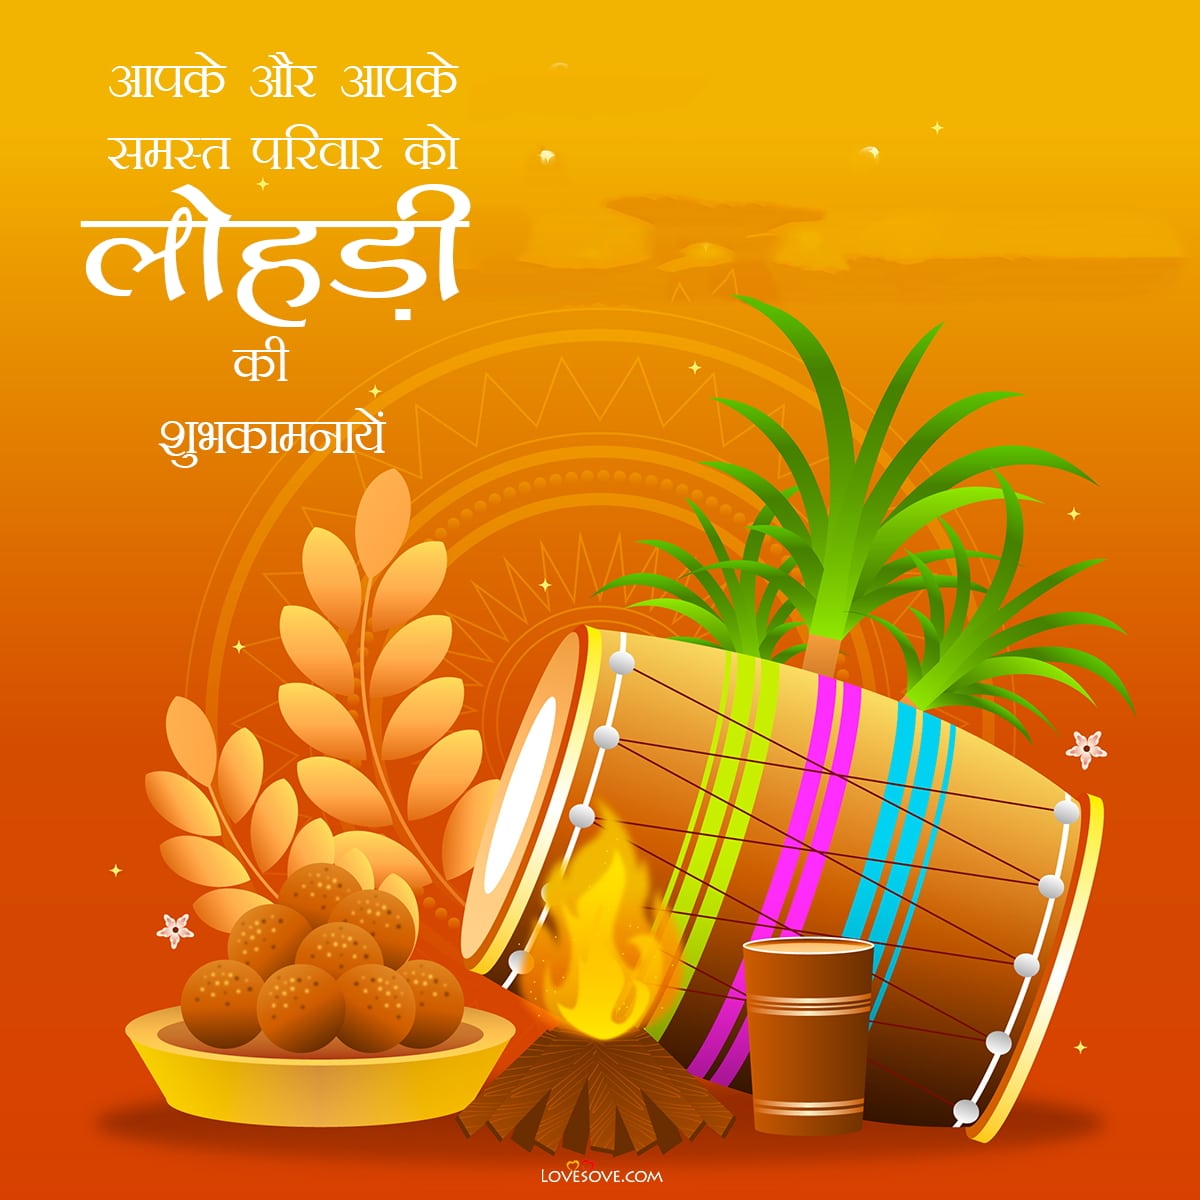 happy lohri wishes in hindi images, लोहड़ी की शुभकामनाएं संदेश, लोहड़ी की हार्दिक बधाई